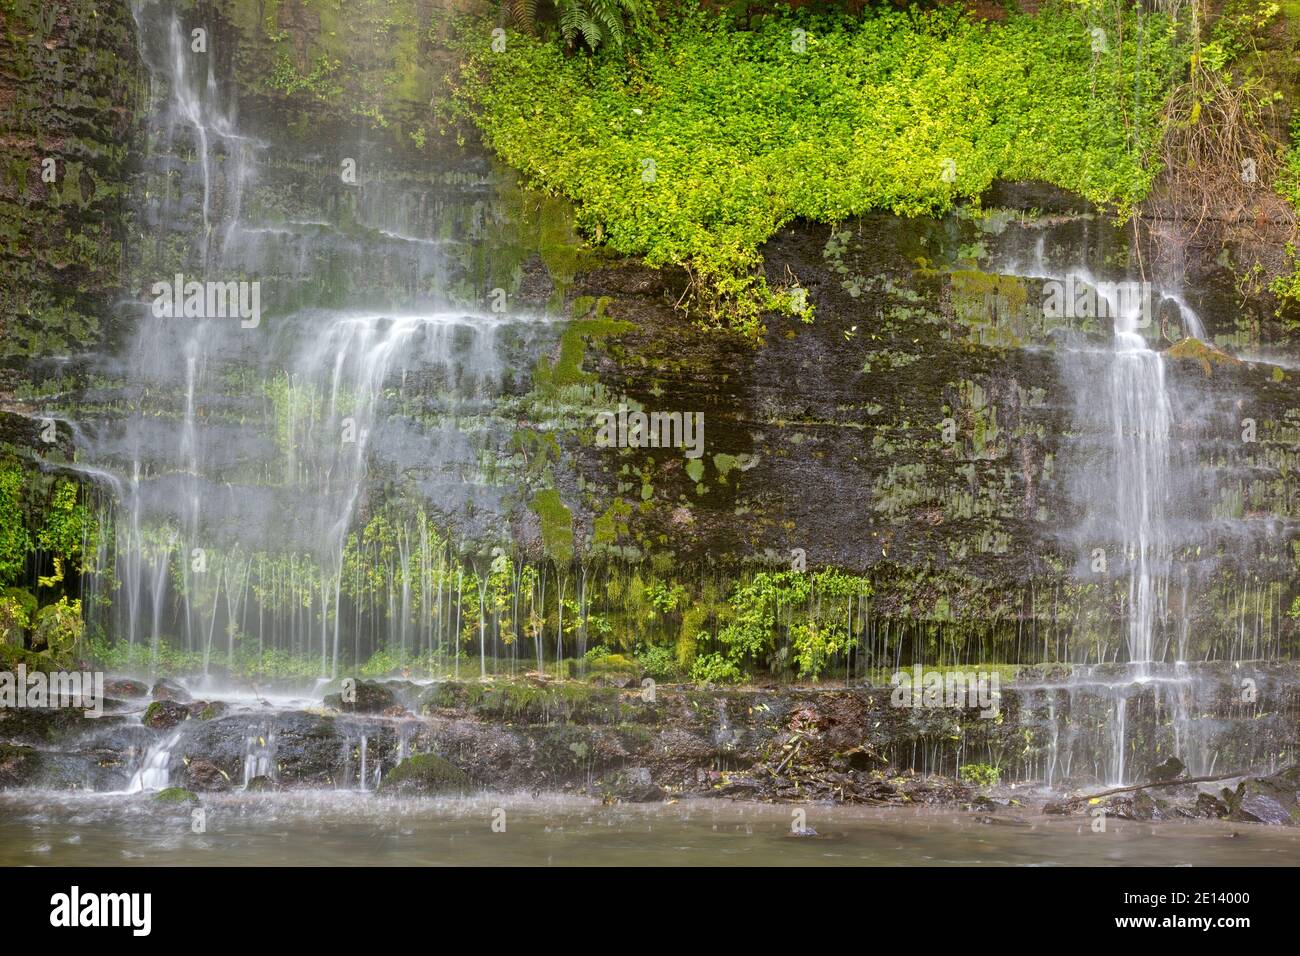 Cascata che scende da una rupe da una sorgente alta sul lato valle. Nella lussureggiante foresta pluviale vicino al vulcano Cotopaxi, Ecuador. Foto Stock